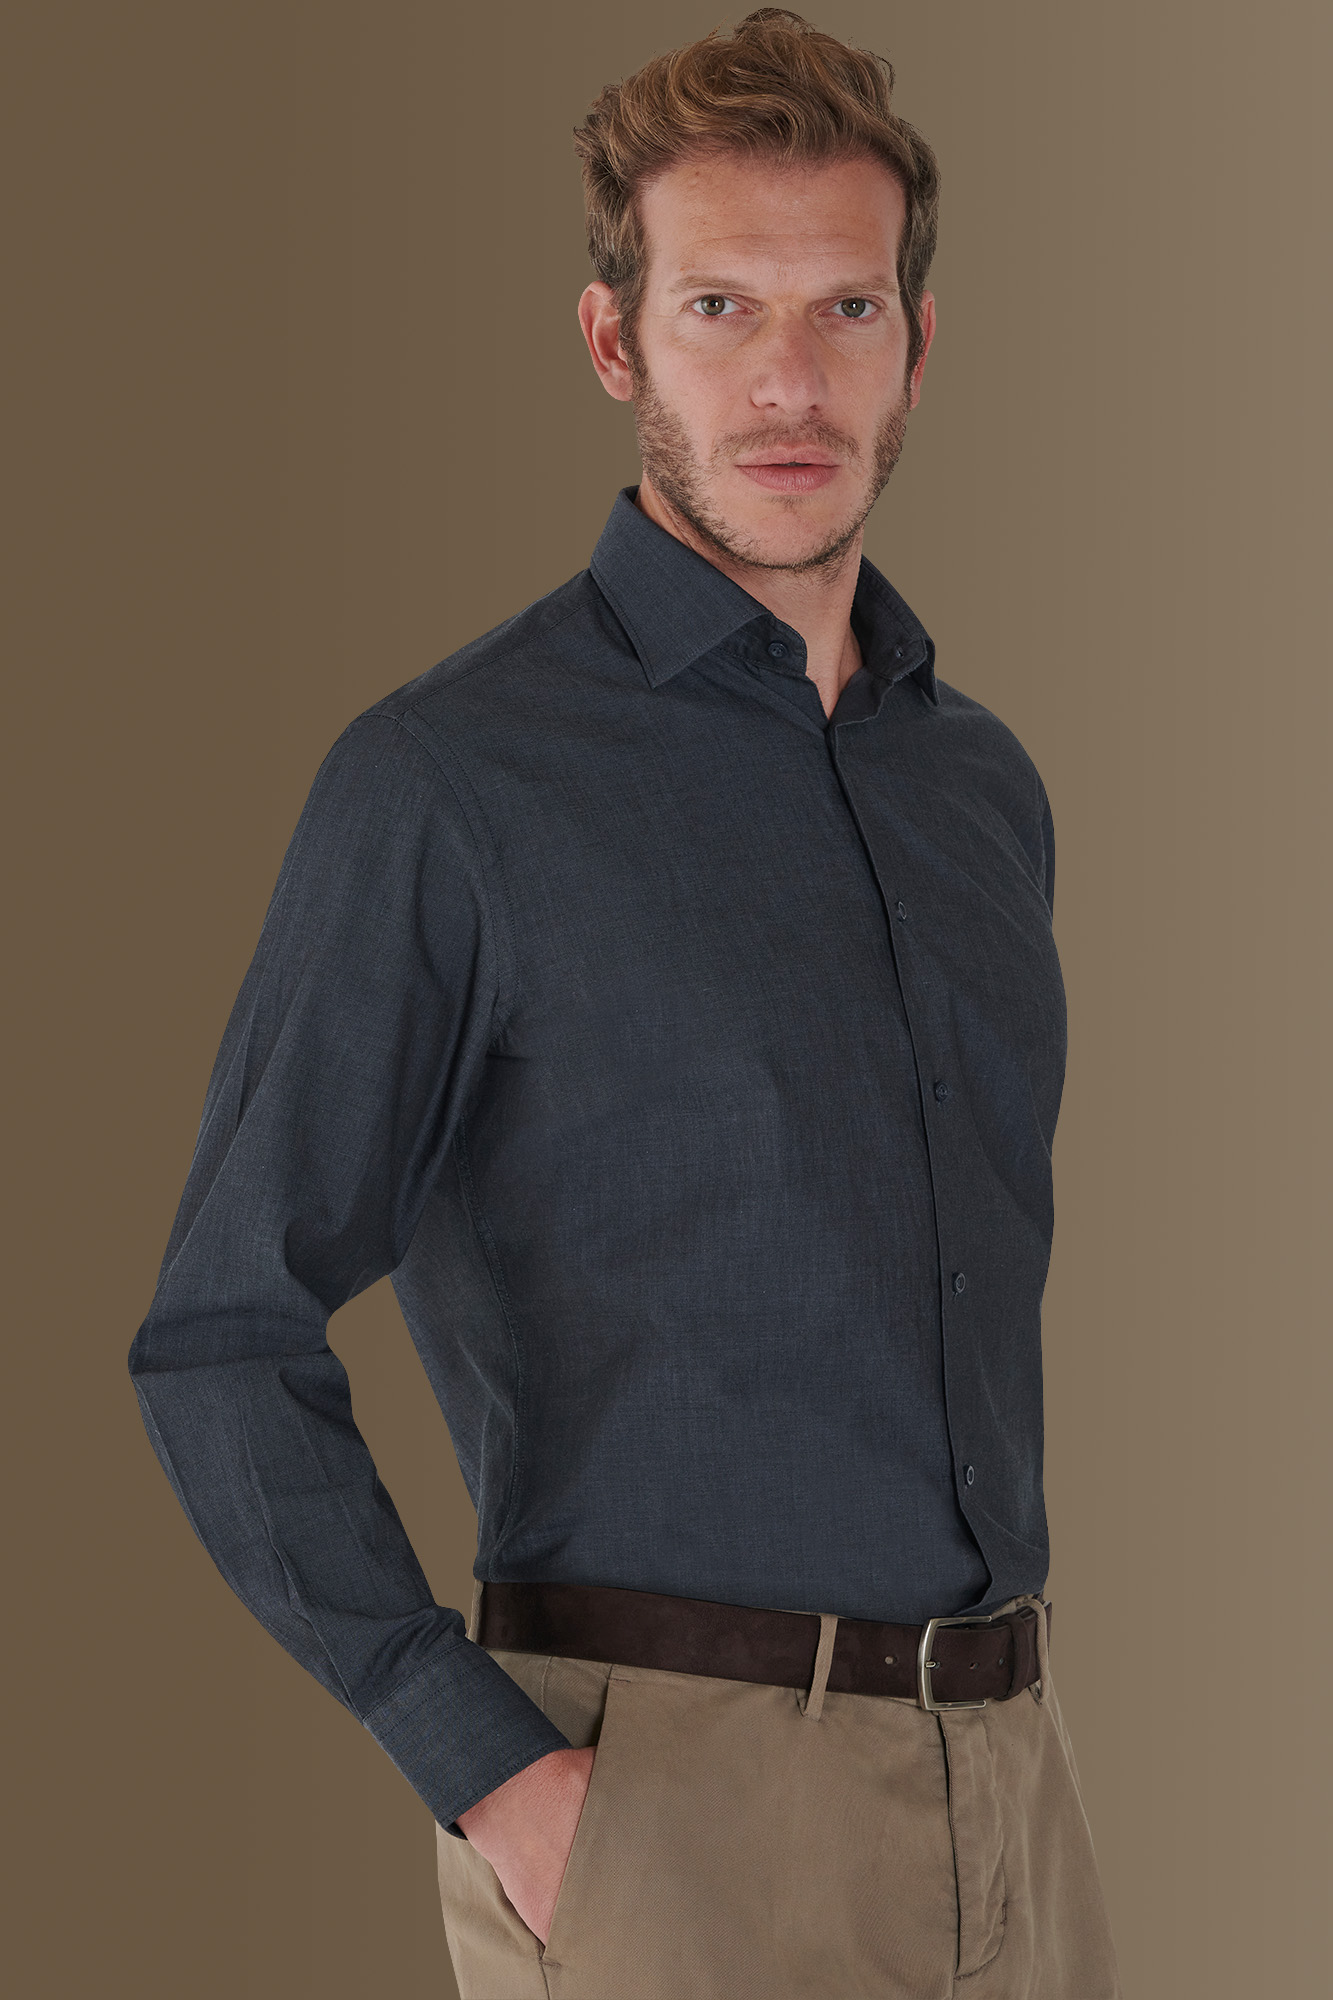 Camicia casual collo francese tinto filo 100% cotone tessuto twill chambray image number null